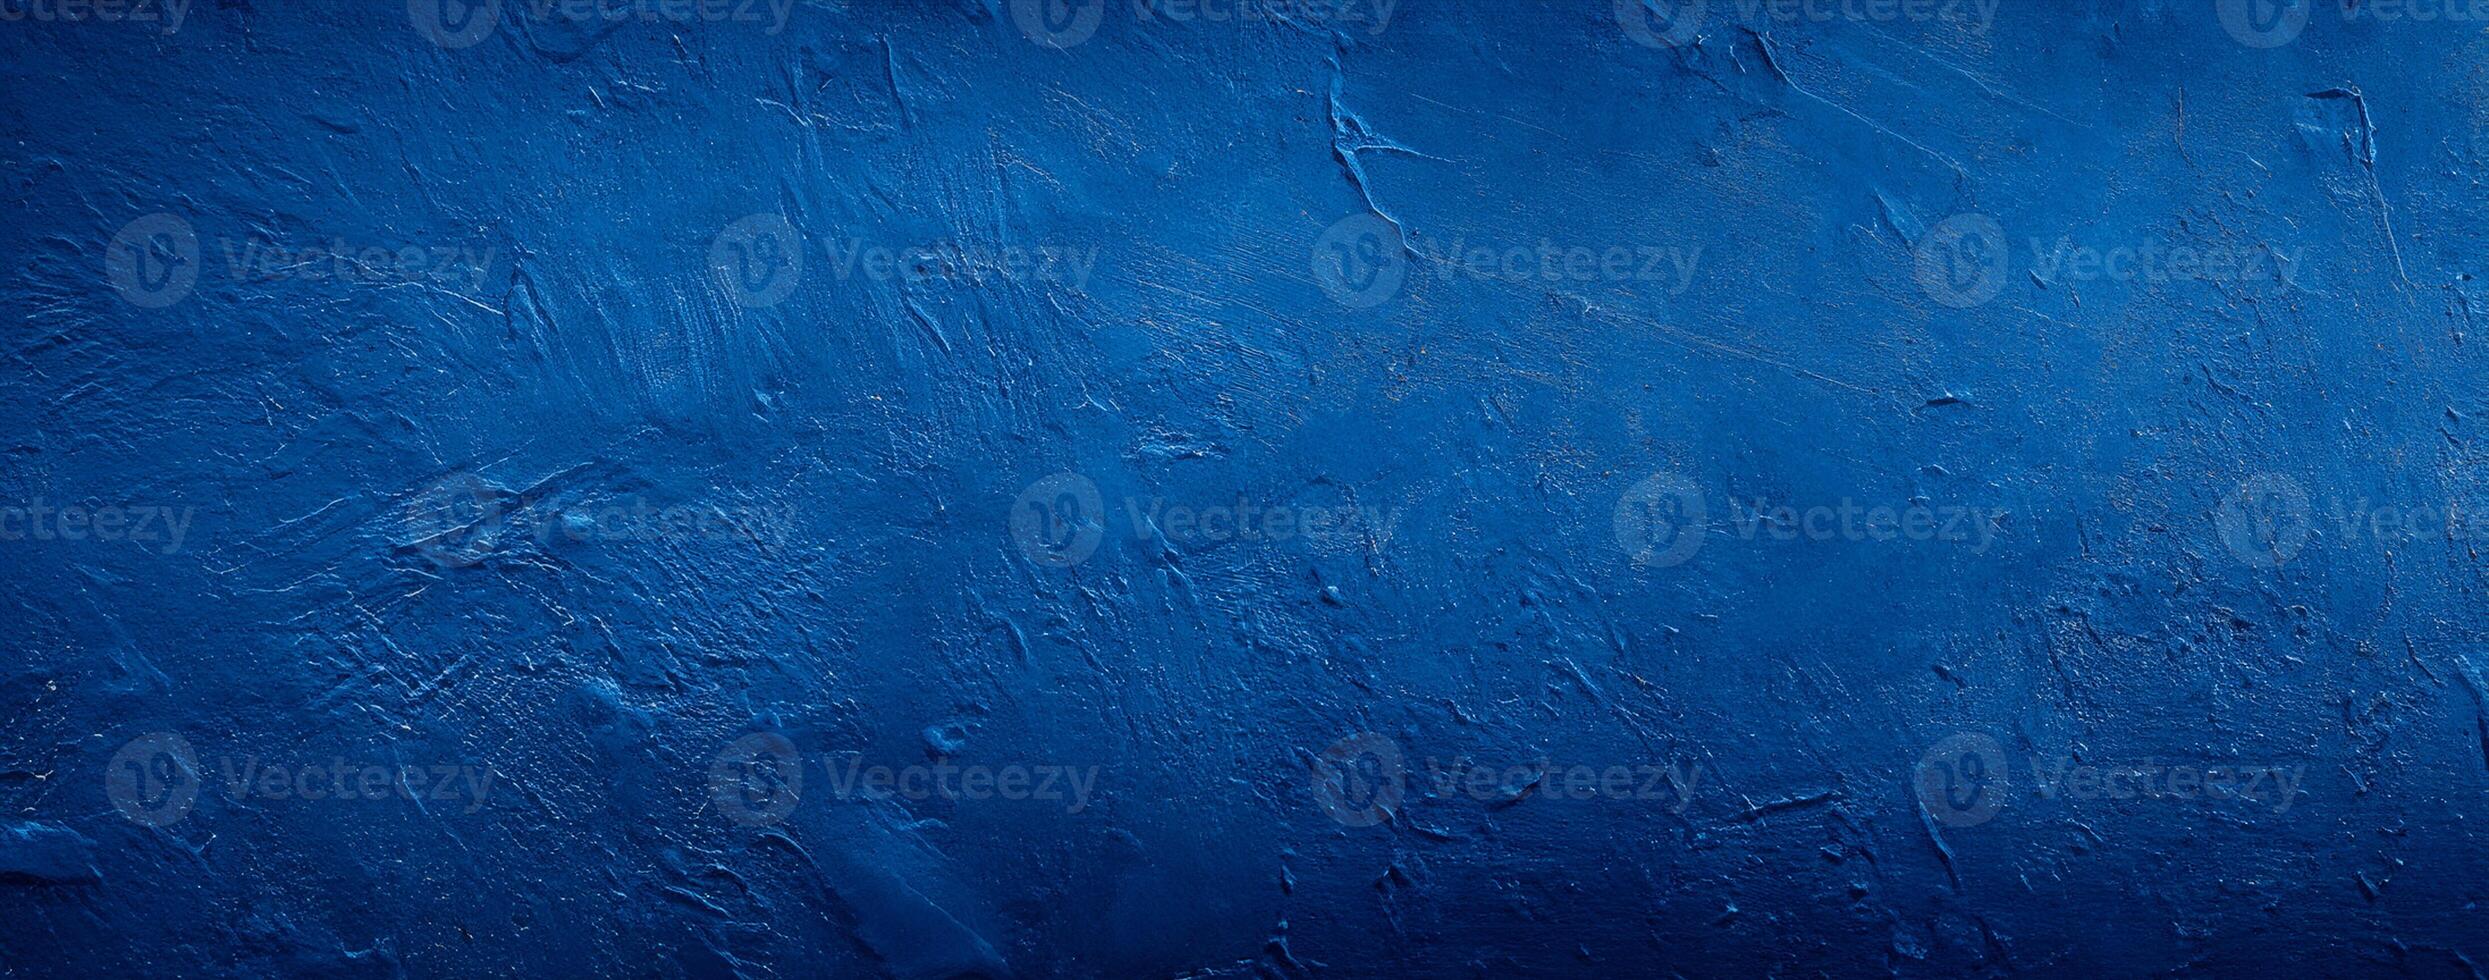 fundo de textura de parede de concreto de cimento abstrato azul escuro foto